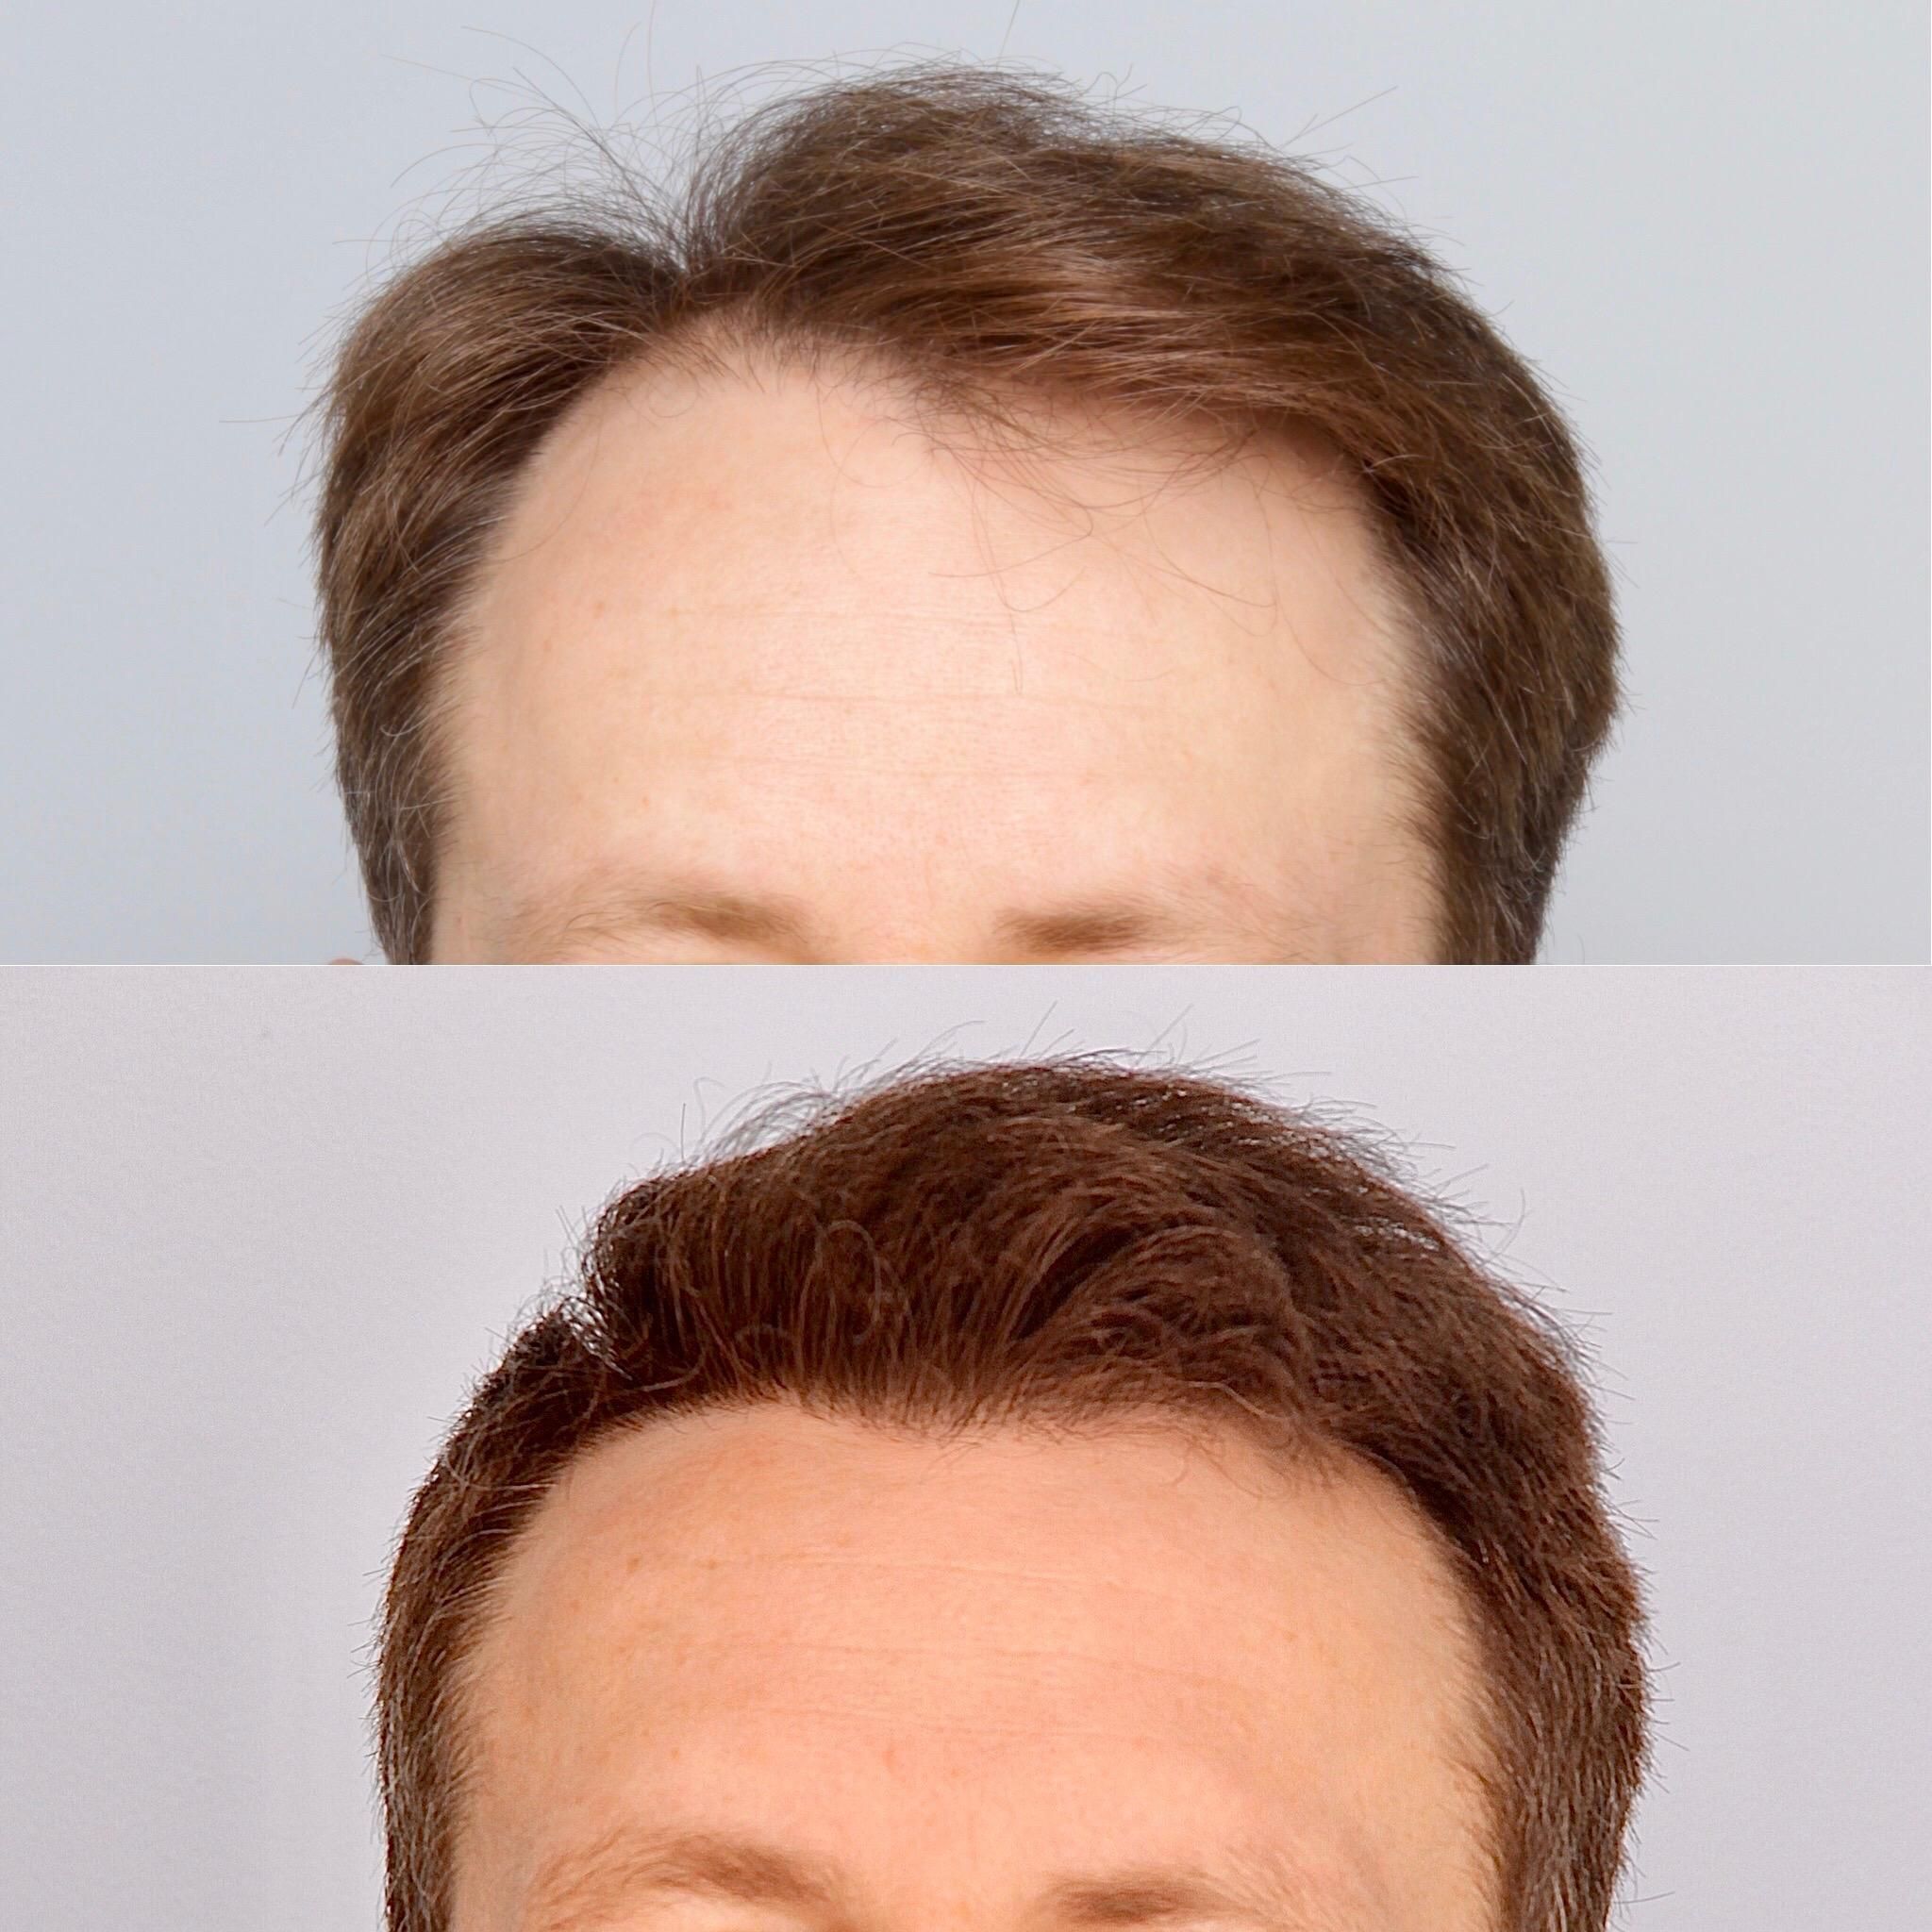 Przeszczep włosów: przed i po